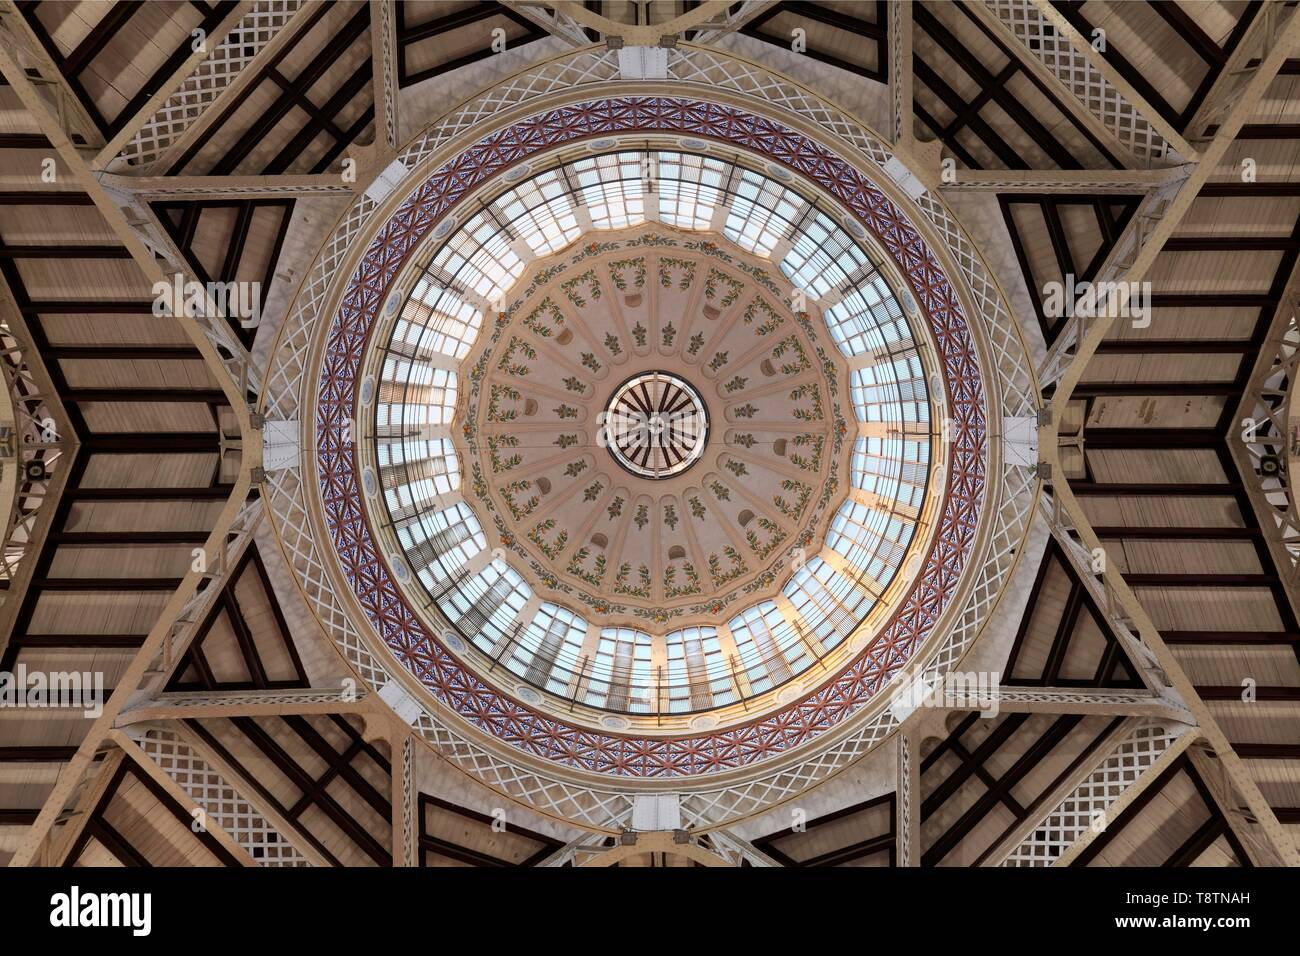 Dôme avec carreaux artistique décoration, Halle, Mercat Central, bâtiment moderniste de Valence, Valence, Espagne Banque D'Images